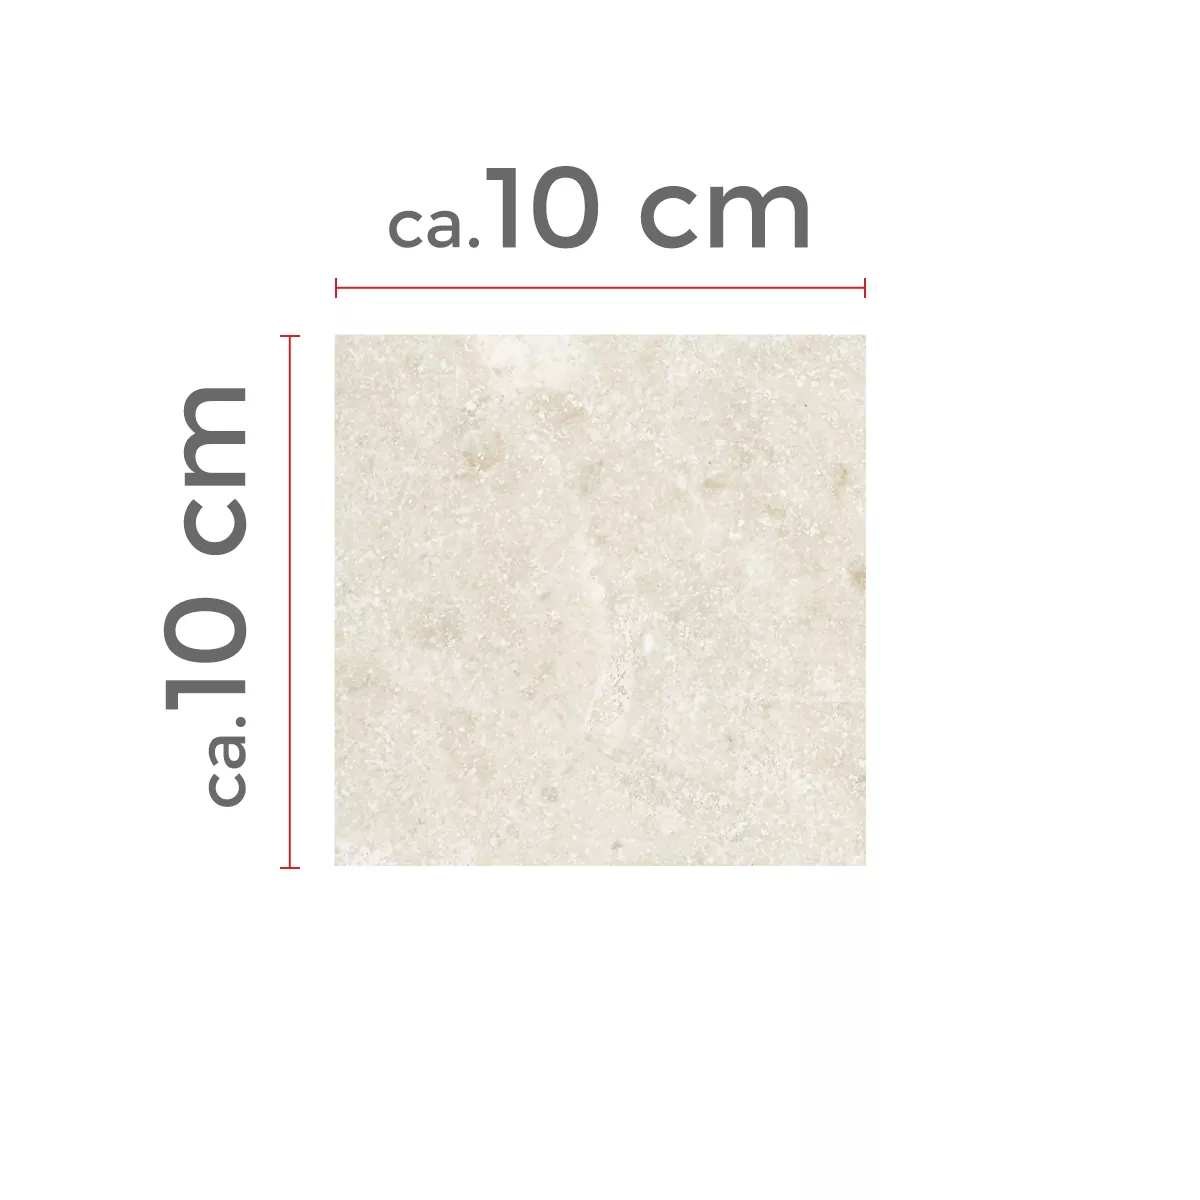 Πρότυπο Πλακάκια Aπό Φυσική Πέτρα Μάρμαρο Afyon Μπεζ 10x10cm